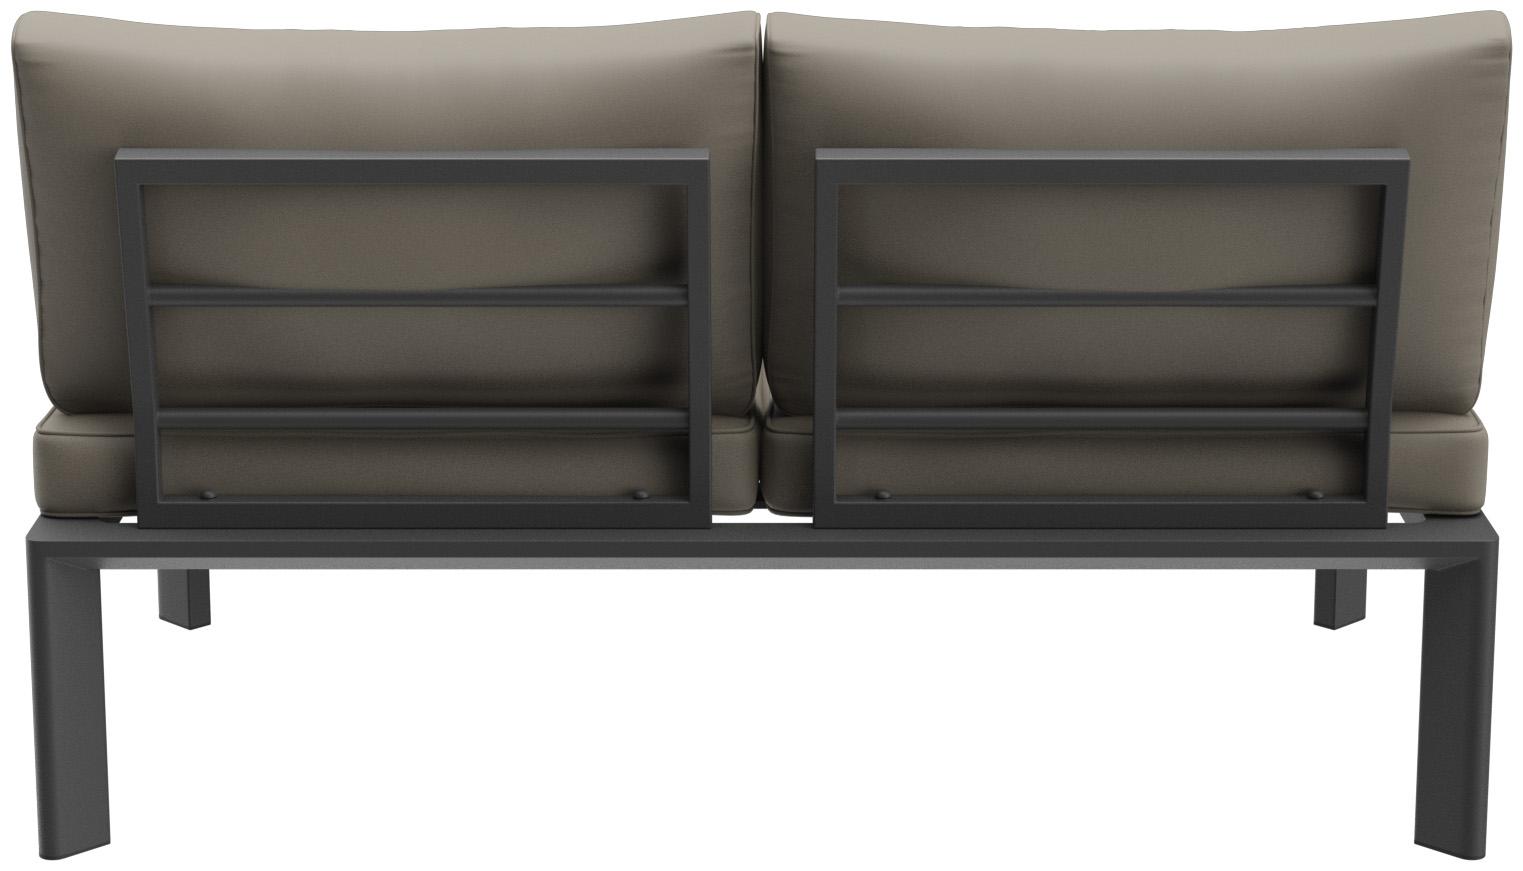 Abbildung 2-Sitzer-Element Lorcan Rückansicht